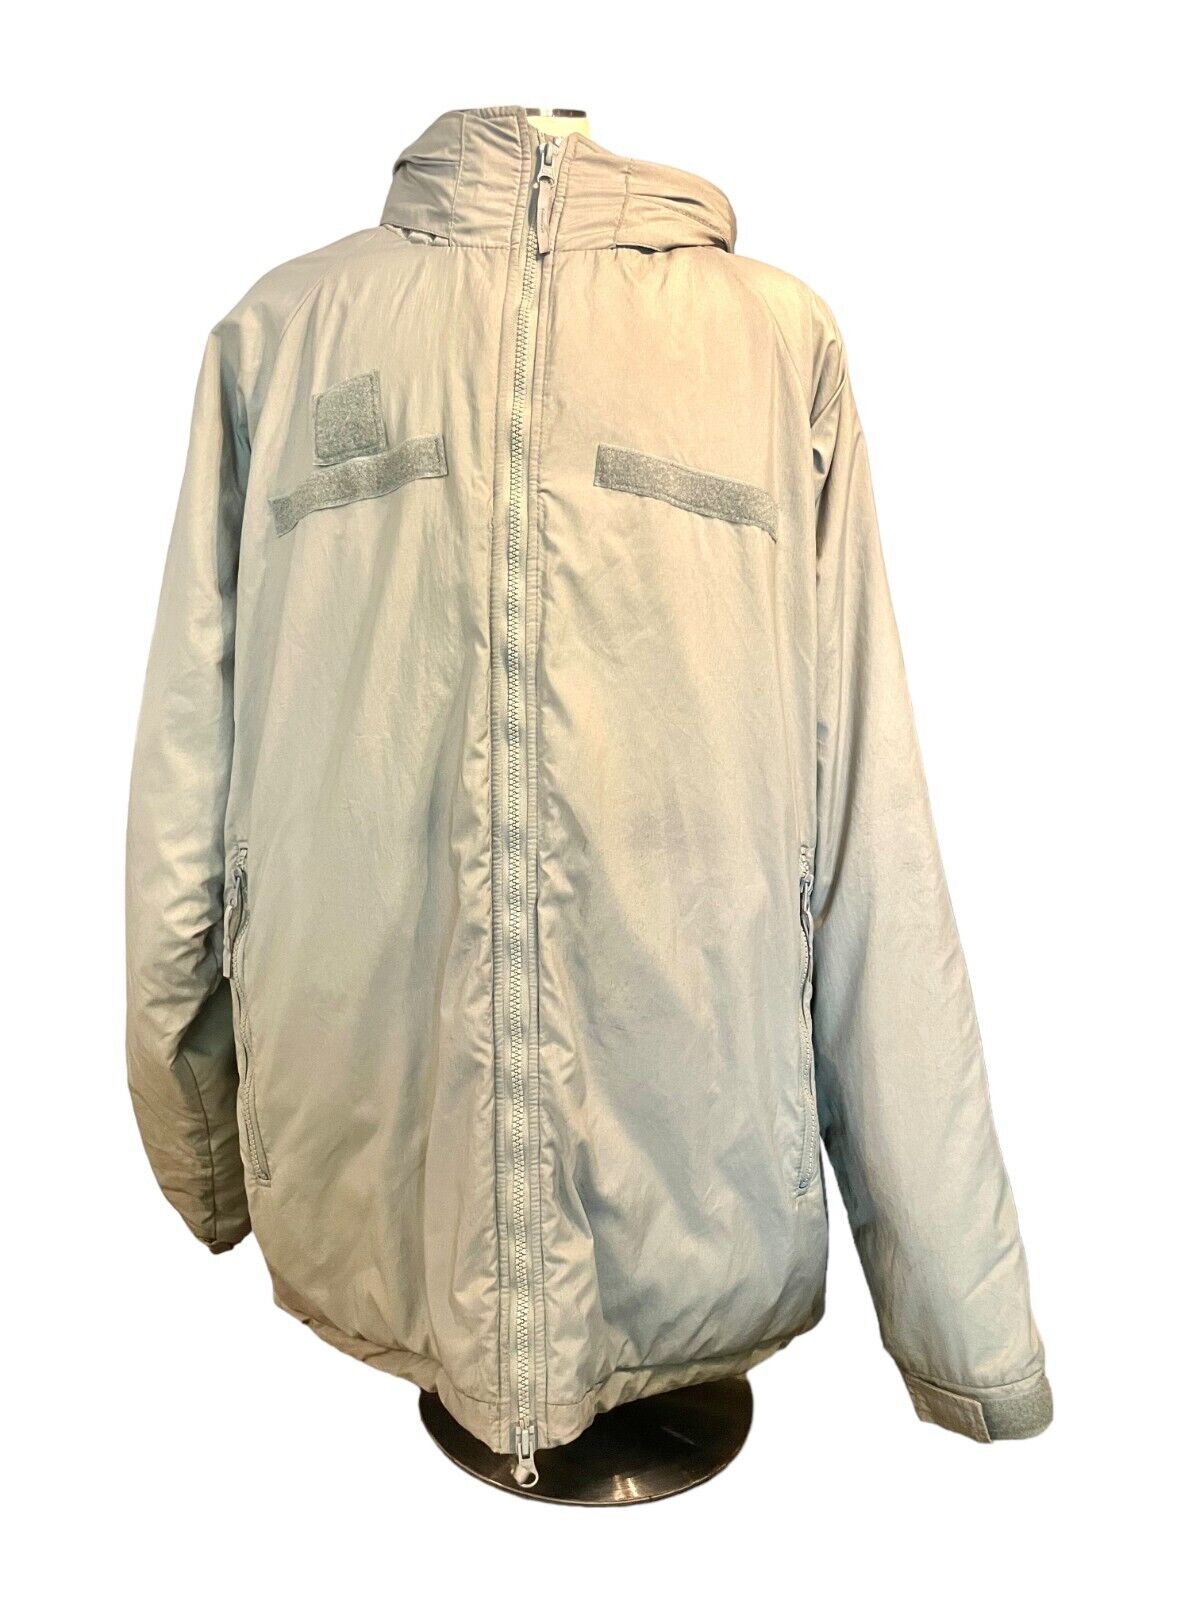 USGI EXTREME COLD WEATHER PARKA Jacket, Gen III 3, Level 7, Medium Long